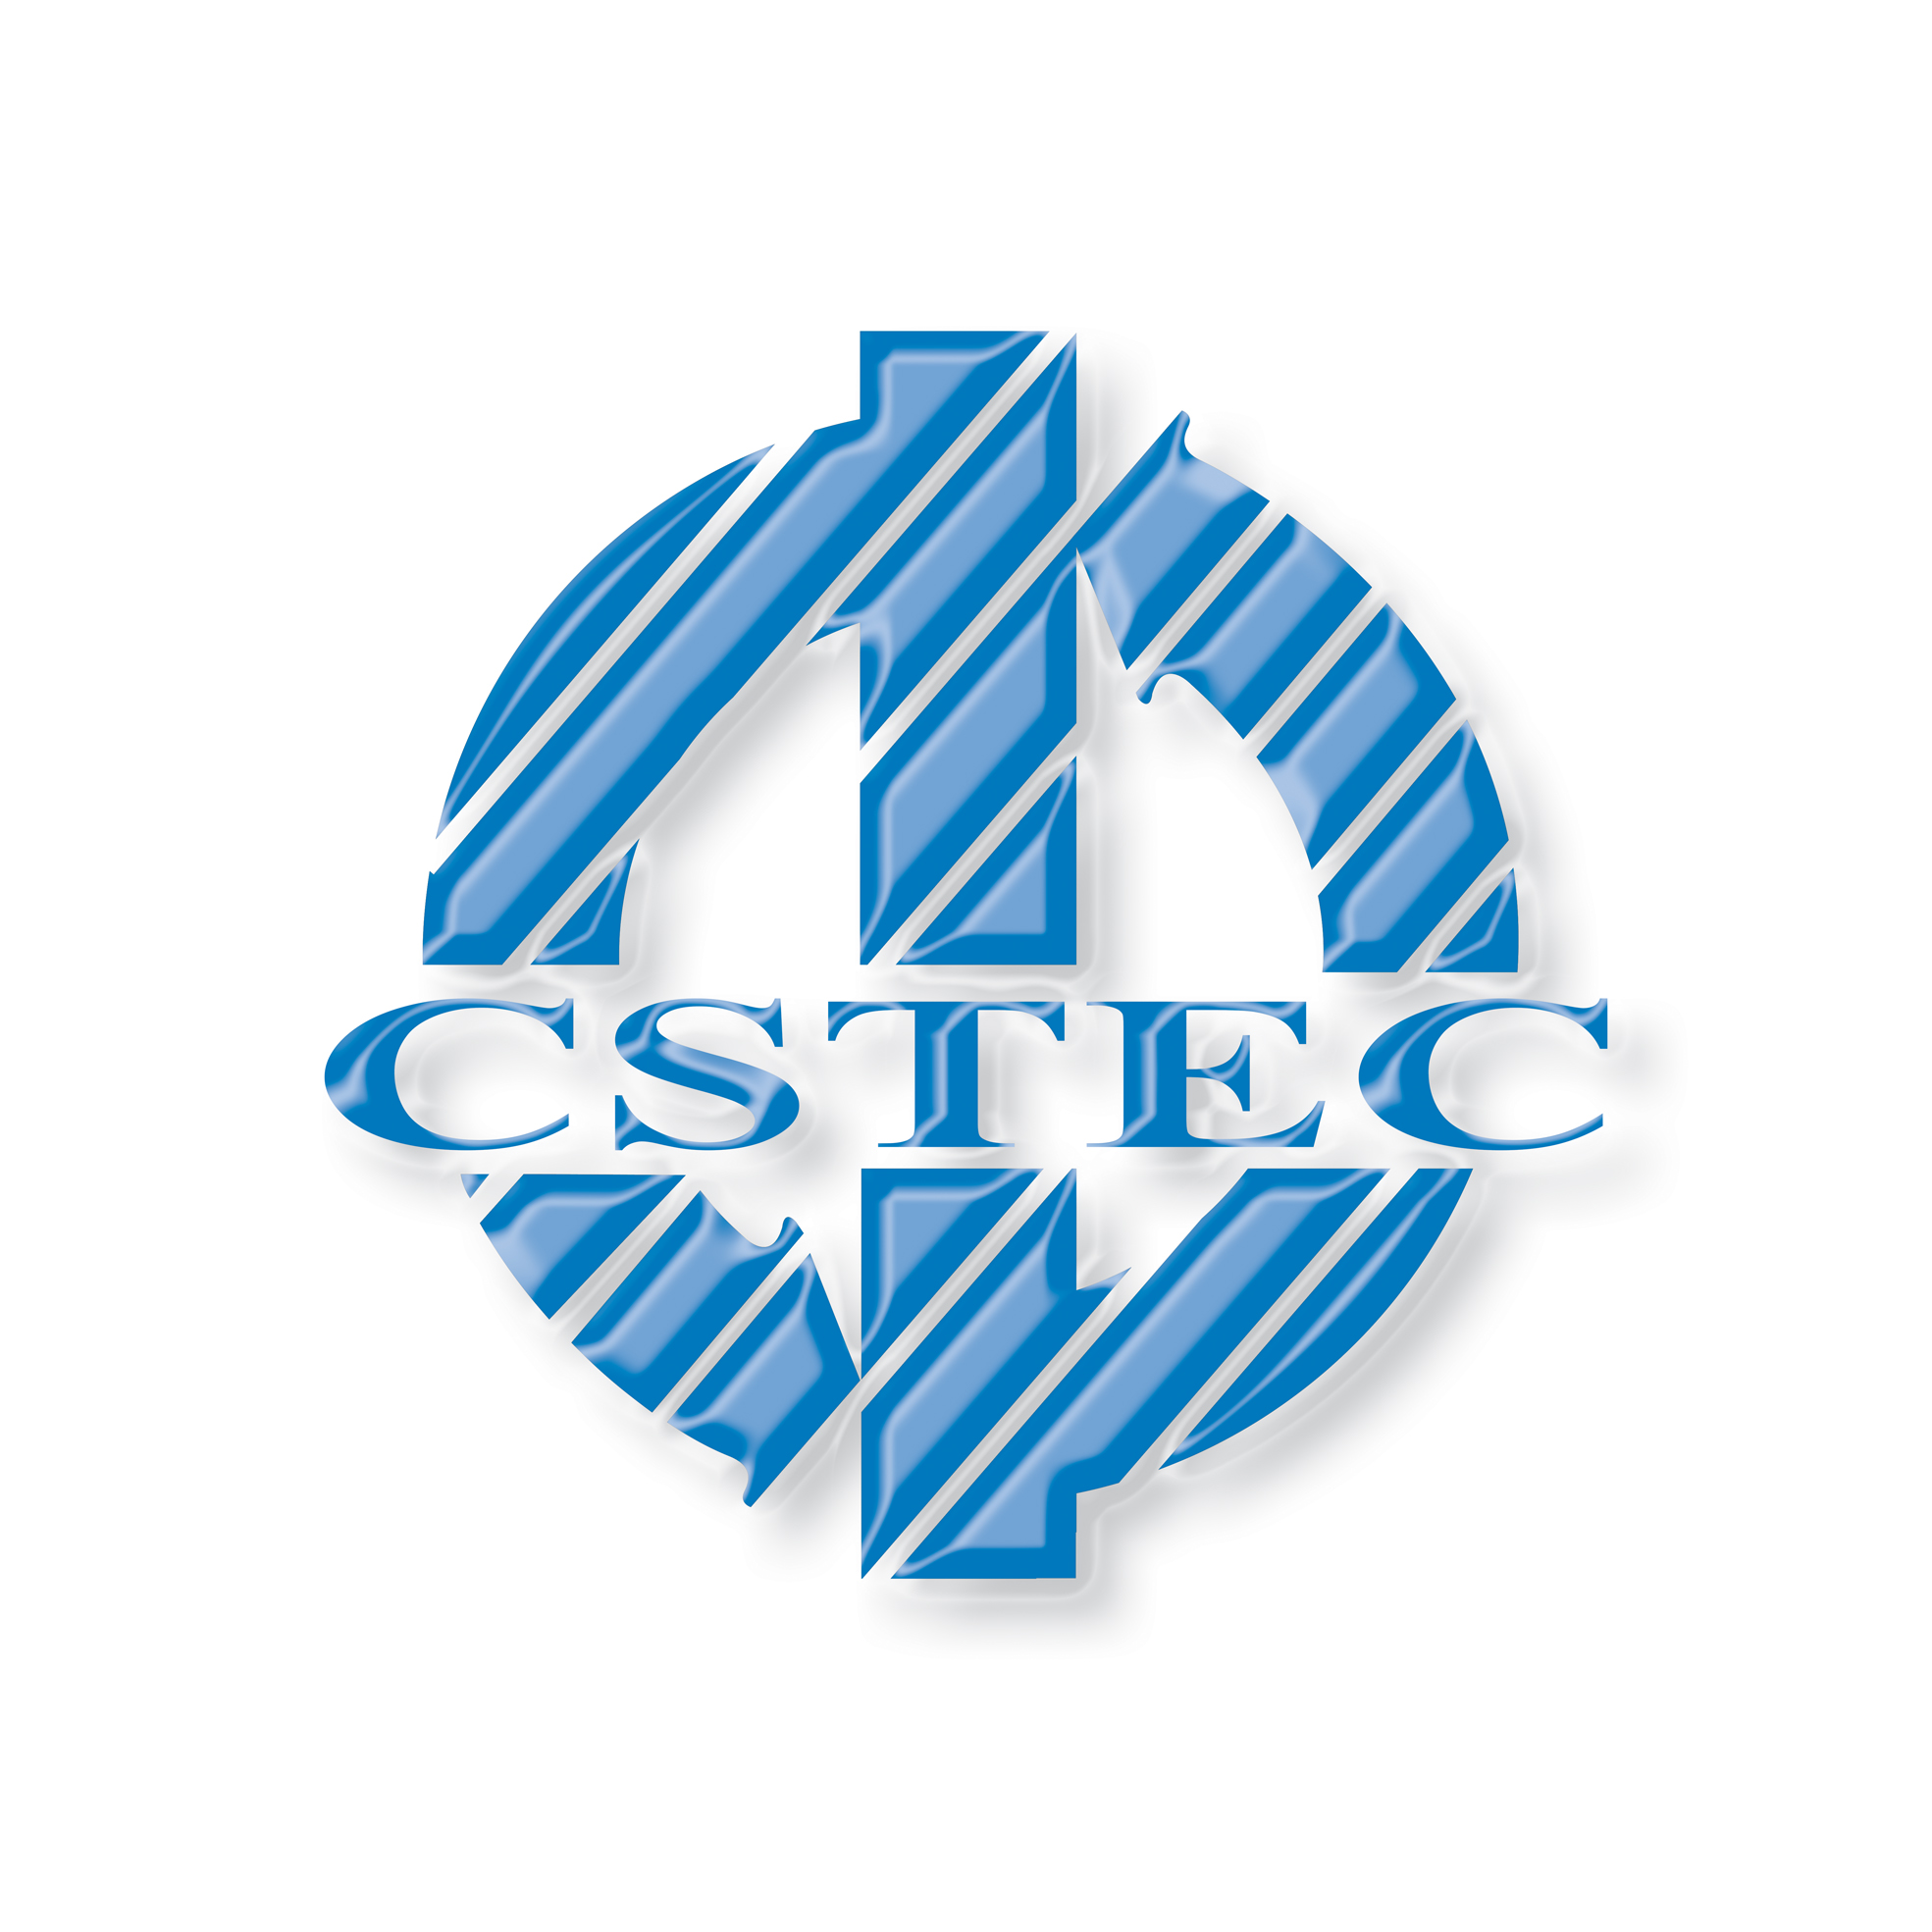 CSTEC-Trưng bày Trao đổi và Hợp tác Đổi mới Khoa học và Công nghệ tại Phòng Triển lãm Ảo CIEP lần thứ 20